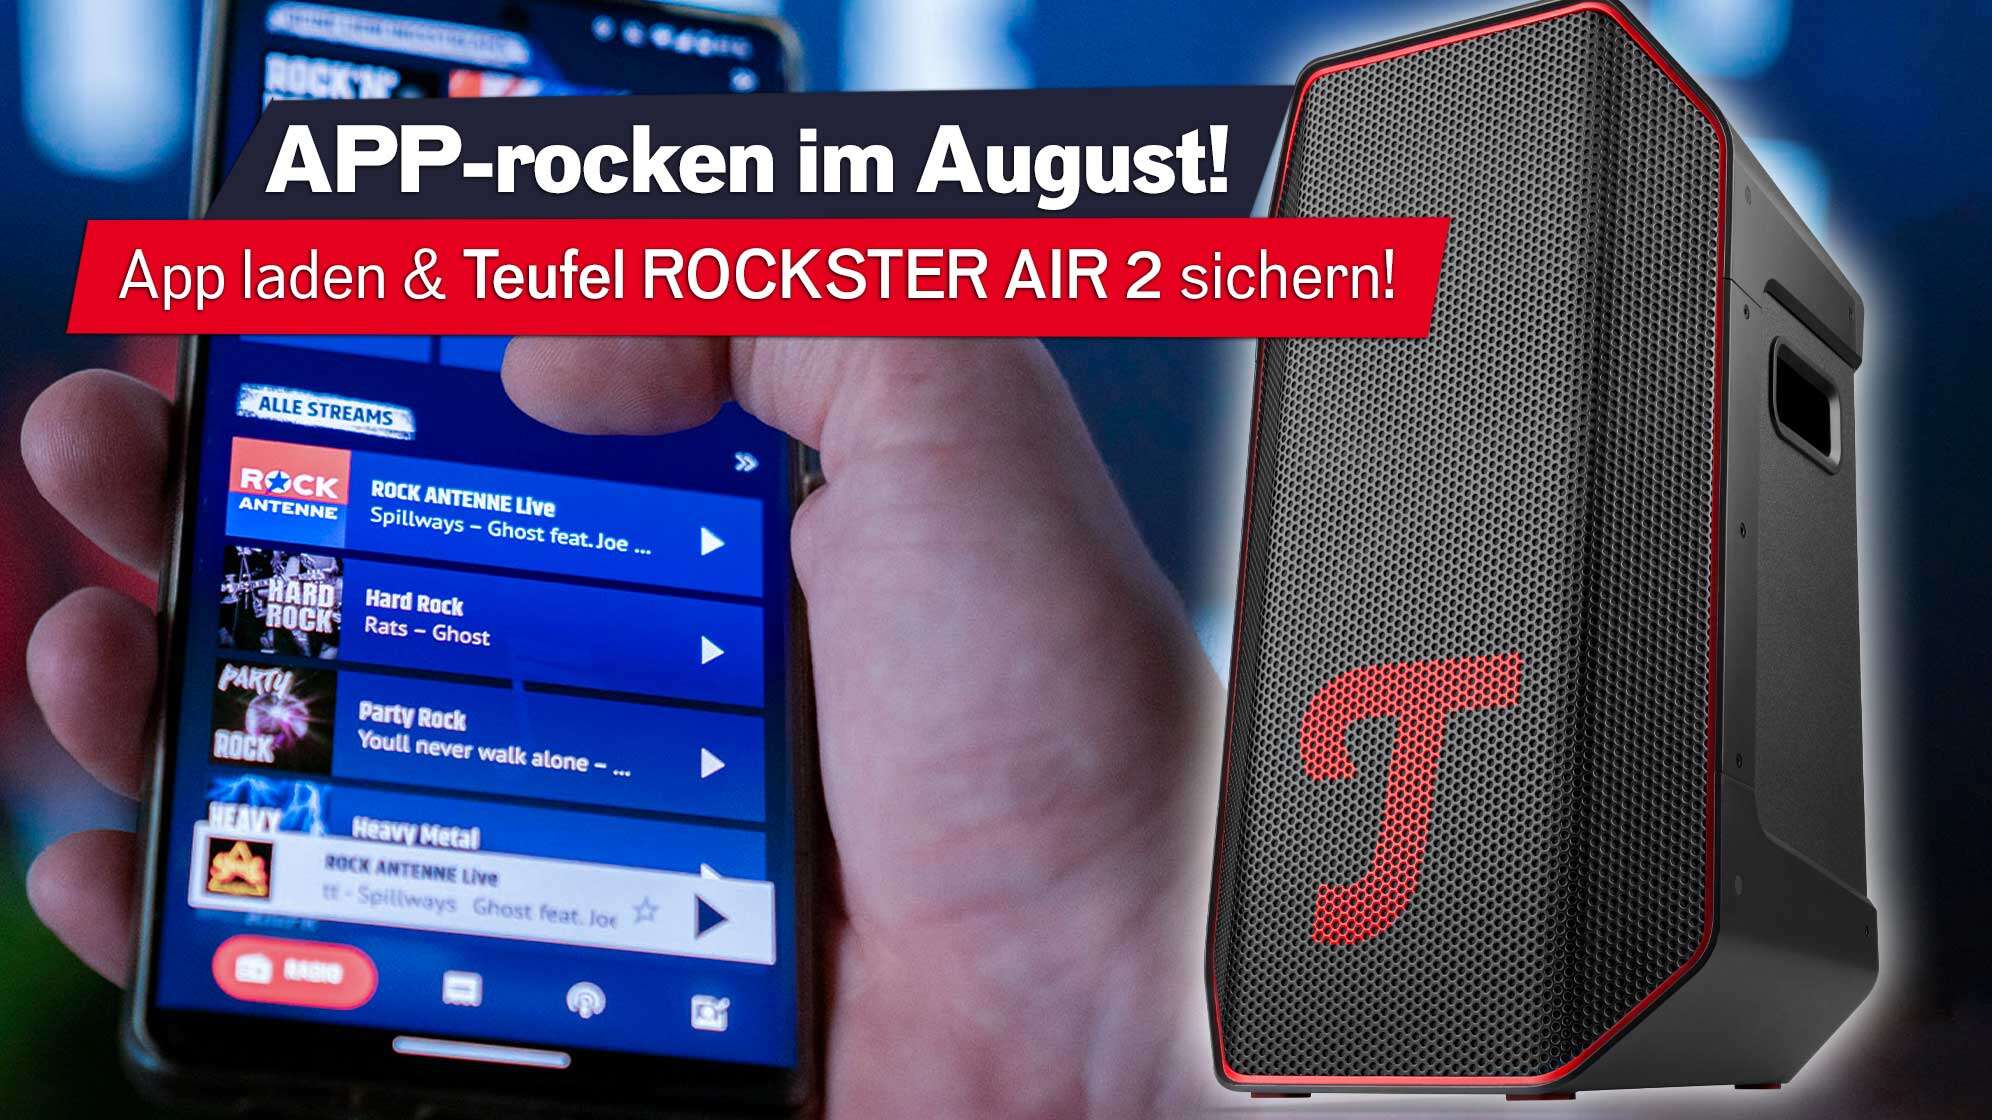 Ein großer Lautsprecher der Marke Teufel - schwarz mit rotem T. Im Hintergrund sieht man ein Smartphone, das die ROCK ANTENNE App geöffnet hat.